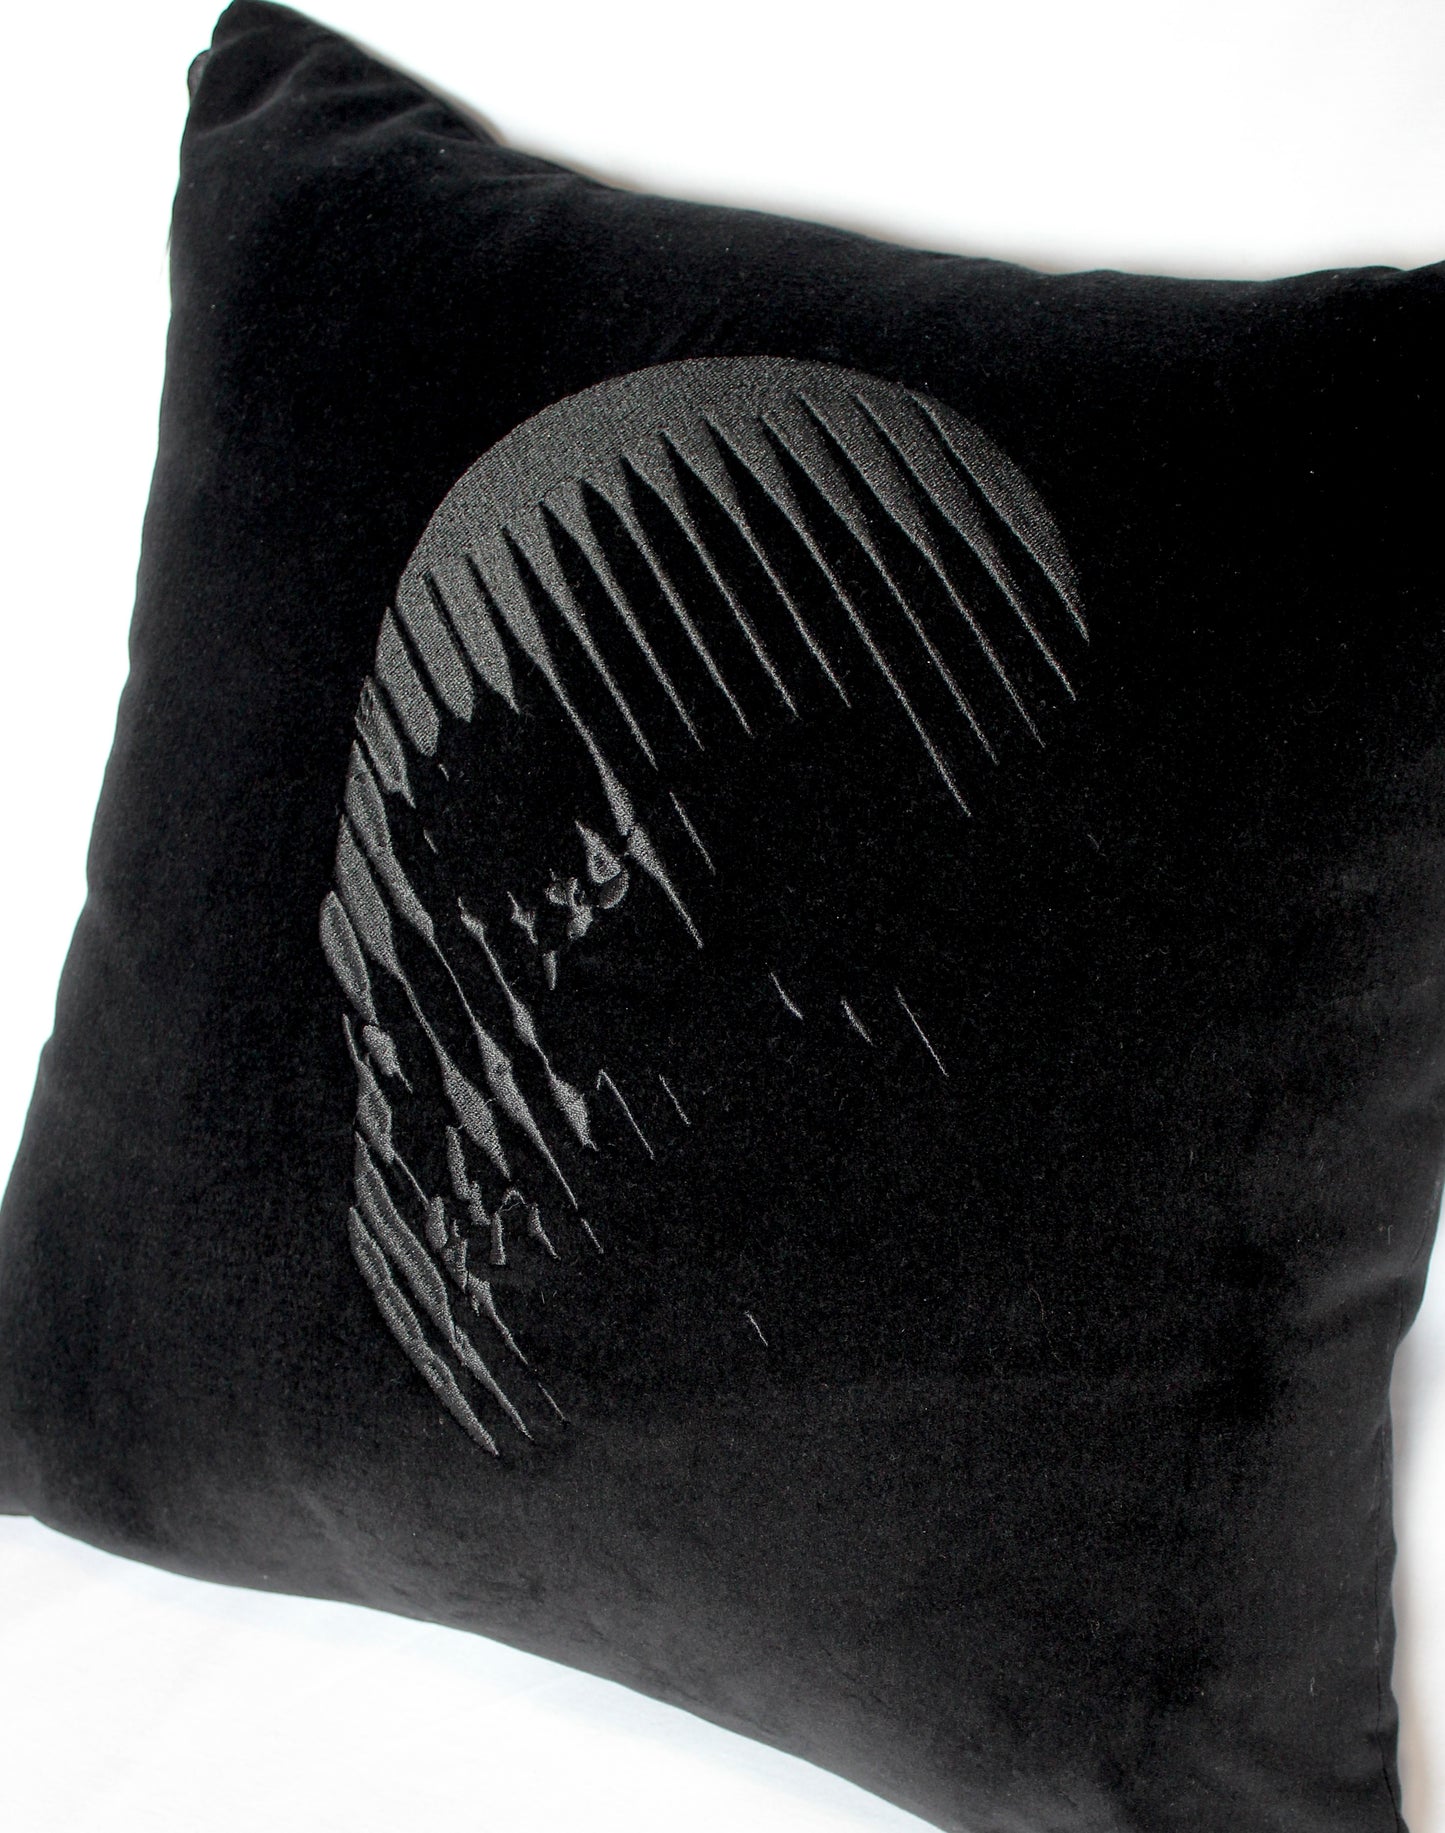 Skull Trompe l'oeil Embroidered Velvet Cushion